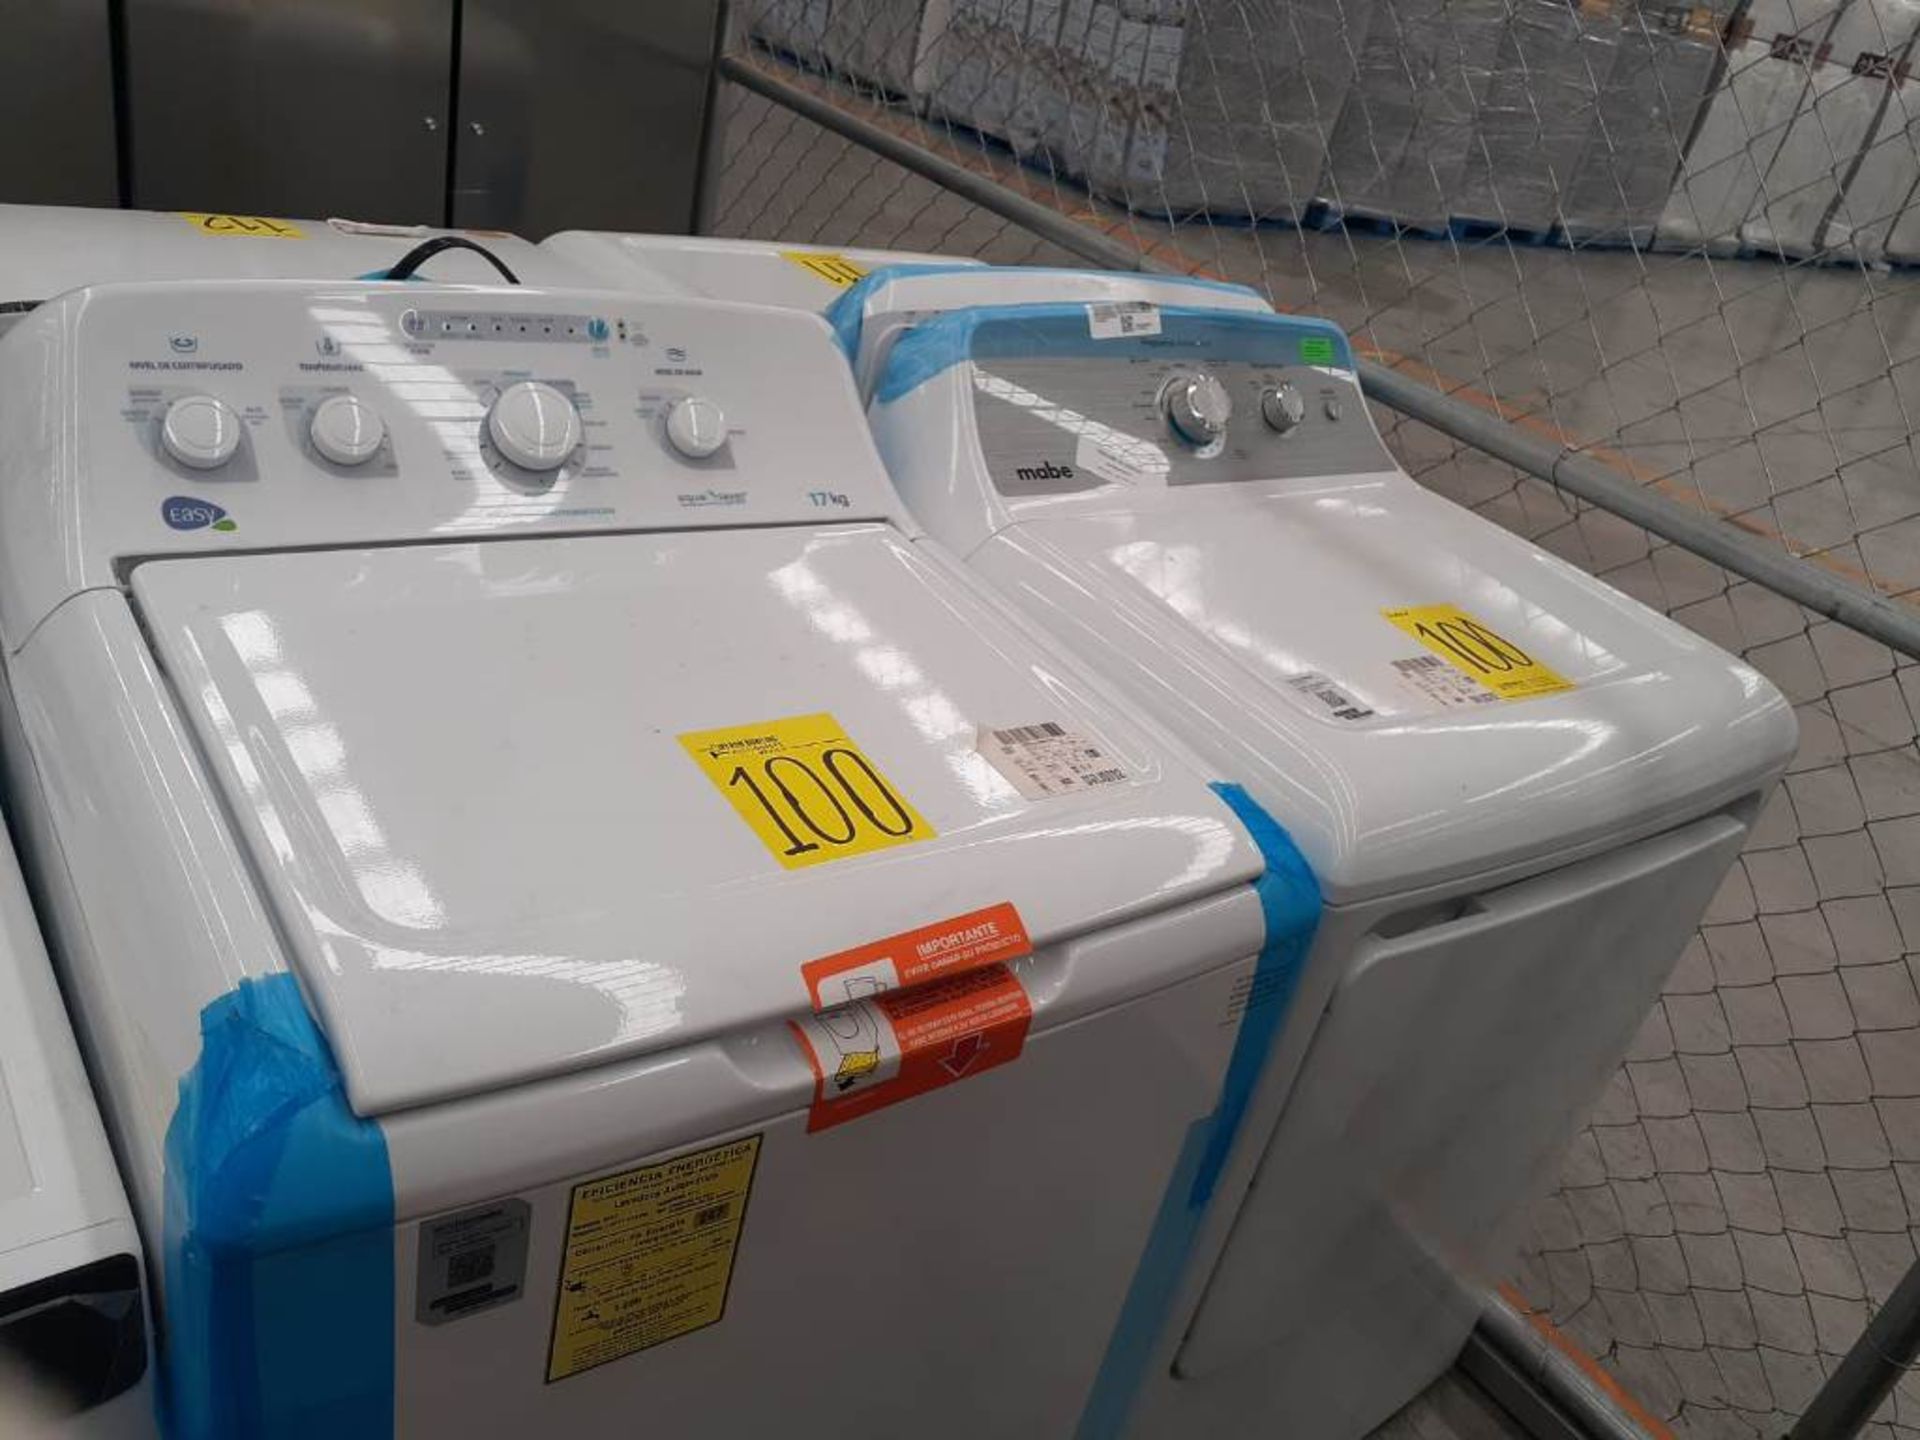 (Equipo nuevo) Lote de lavadora y secadora contiene: 1 Lavadora de 17 KG Marca EASY, Modelo LEA7711 - Image 2 of 7